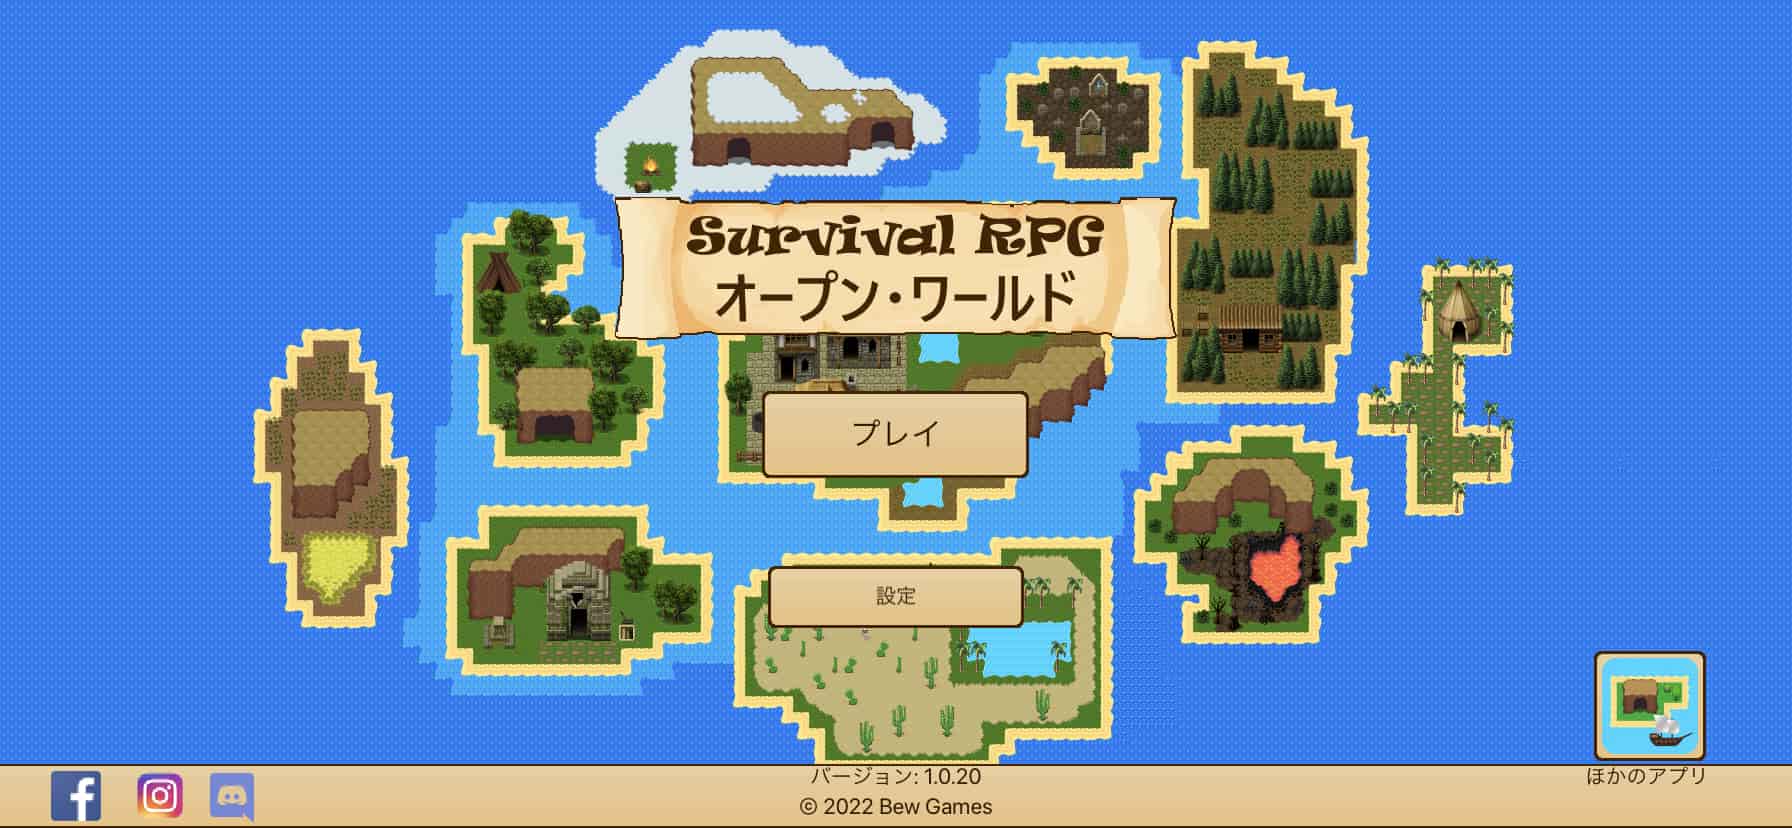 Survival RPG：オープン・ワールド・ピクセルのレビューと序盤攻略